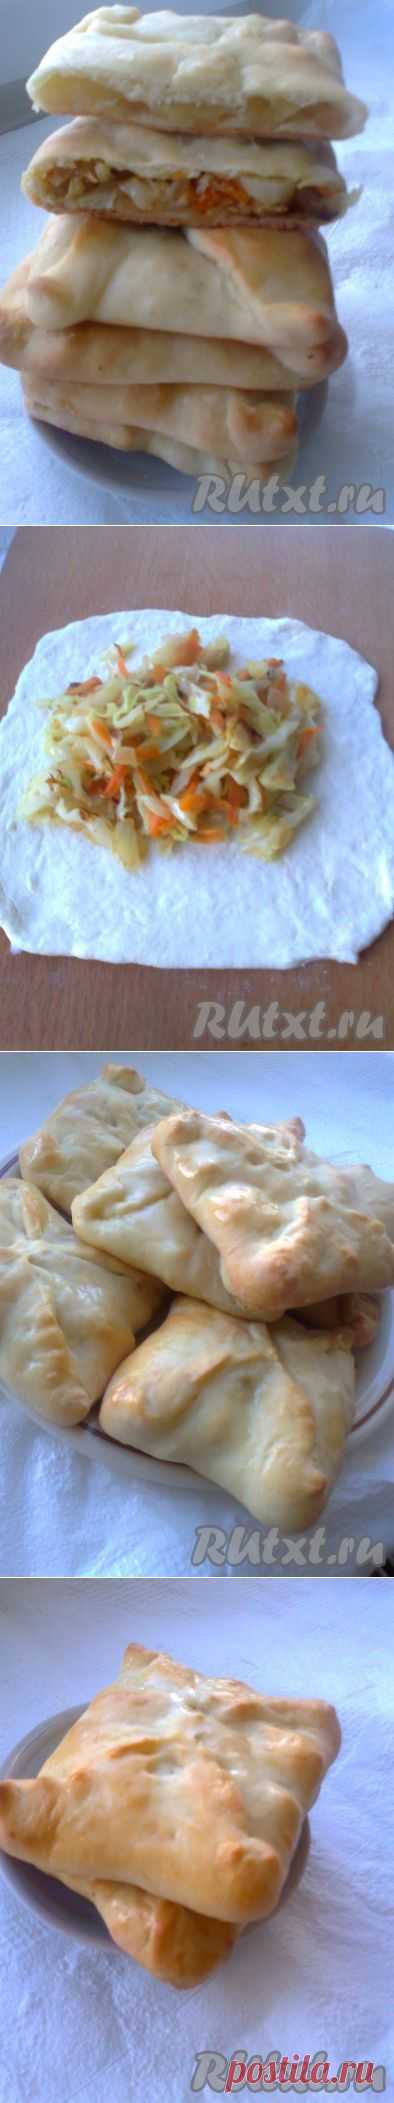 Пирожки на кефире без дрожжей (рецепт с фото) | RUtxt.ru